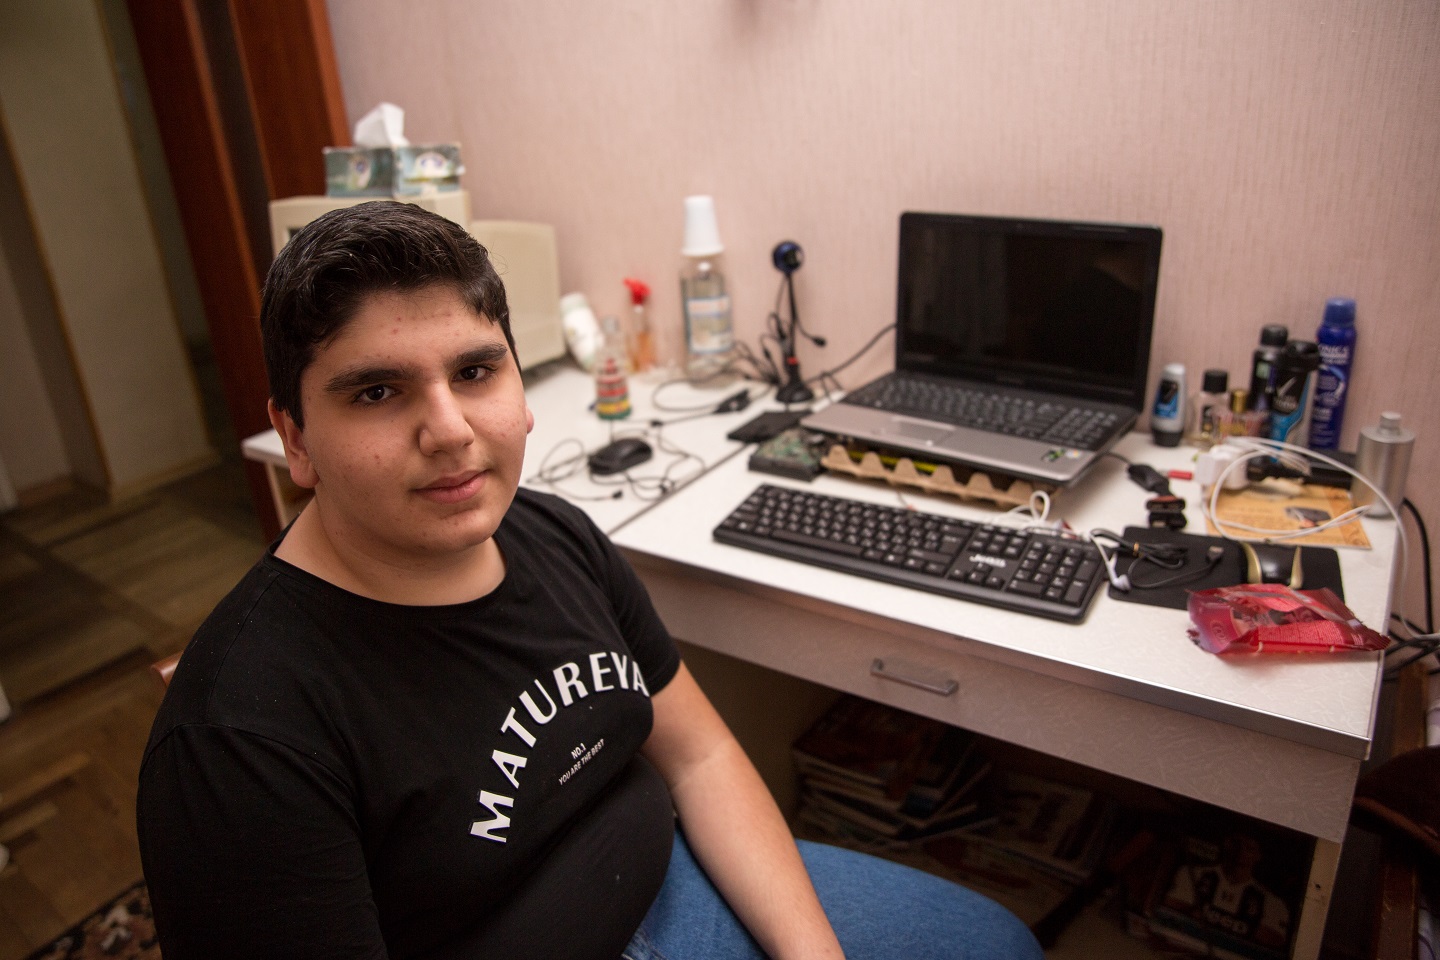 Մաթևոսը երազում է հզոր համակարգիչ ունենալ, որով կկարողանա ԹՈՒՄՈ տեխնոլոգիական կենտրոնի առցանց դասերին մասնակցել © UNHCR/Areg Balayan